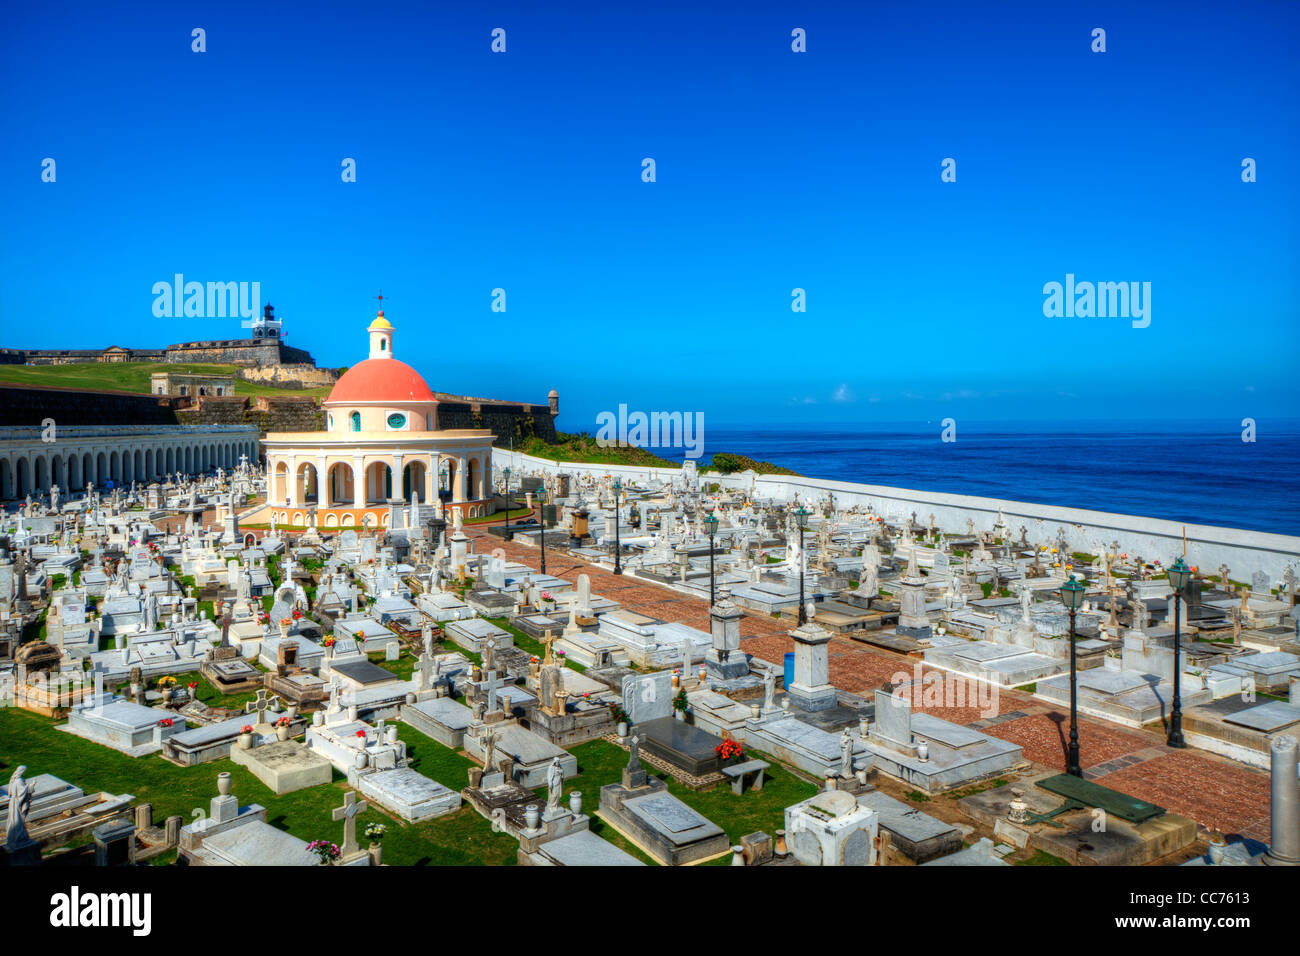 Cimetière historique de San Juan, Porto Rico. Banque D'Images